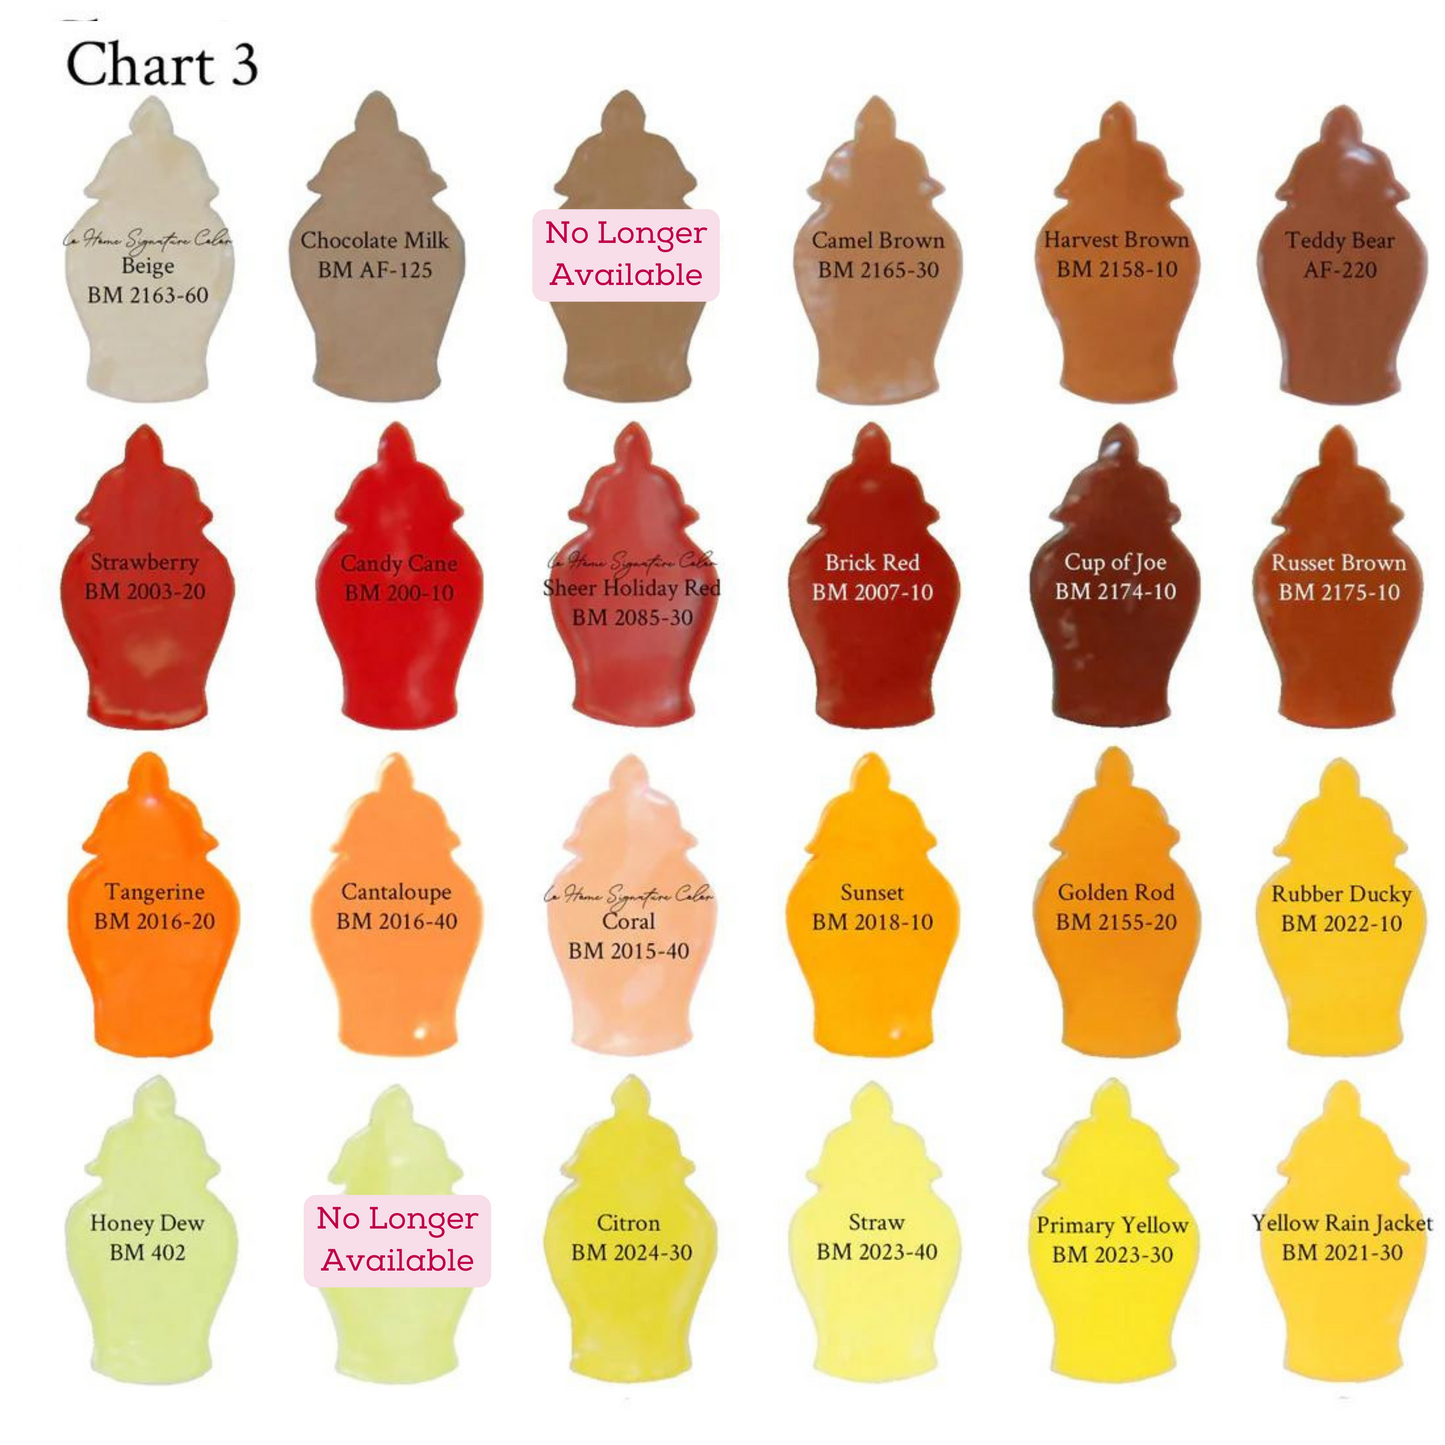 Custom Color Solid Ginger Jars